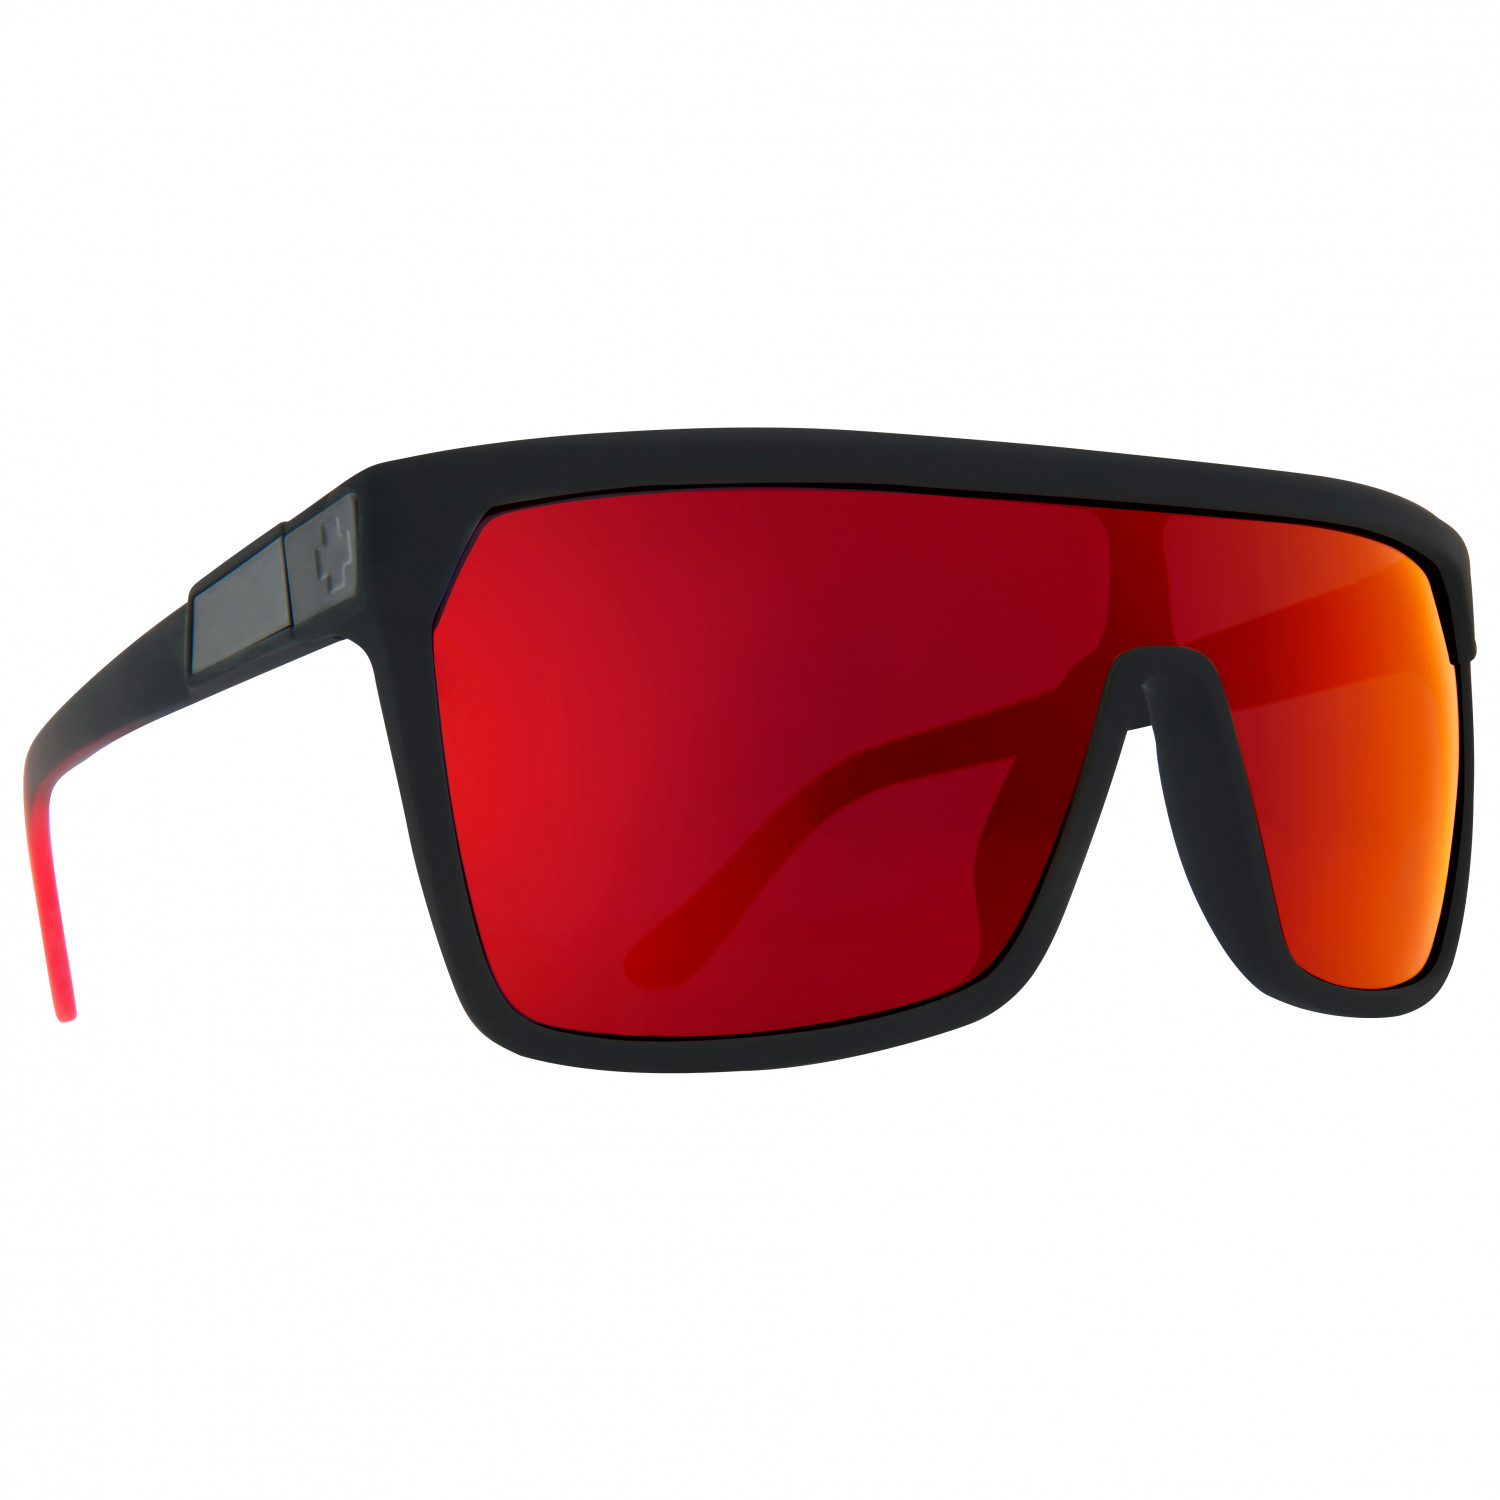 Солнцезащитные очки Spy+ Flynn S3 (VLT 15%), цвет Soft Matte Black Red Fade berry flynn northern spy